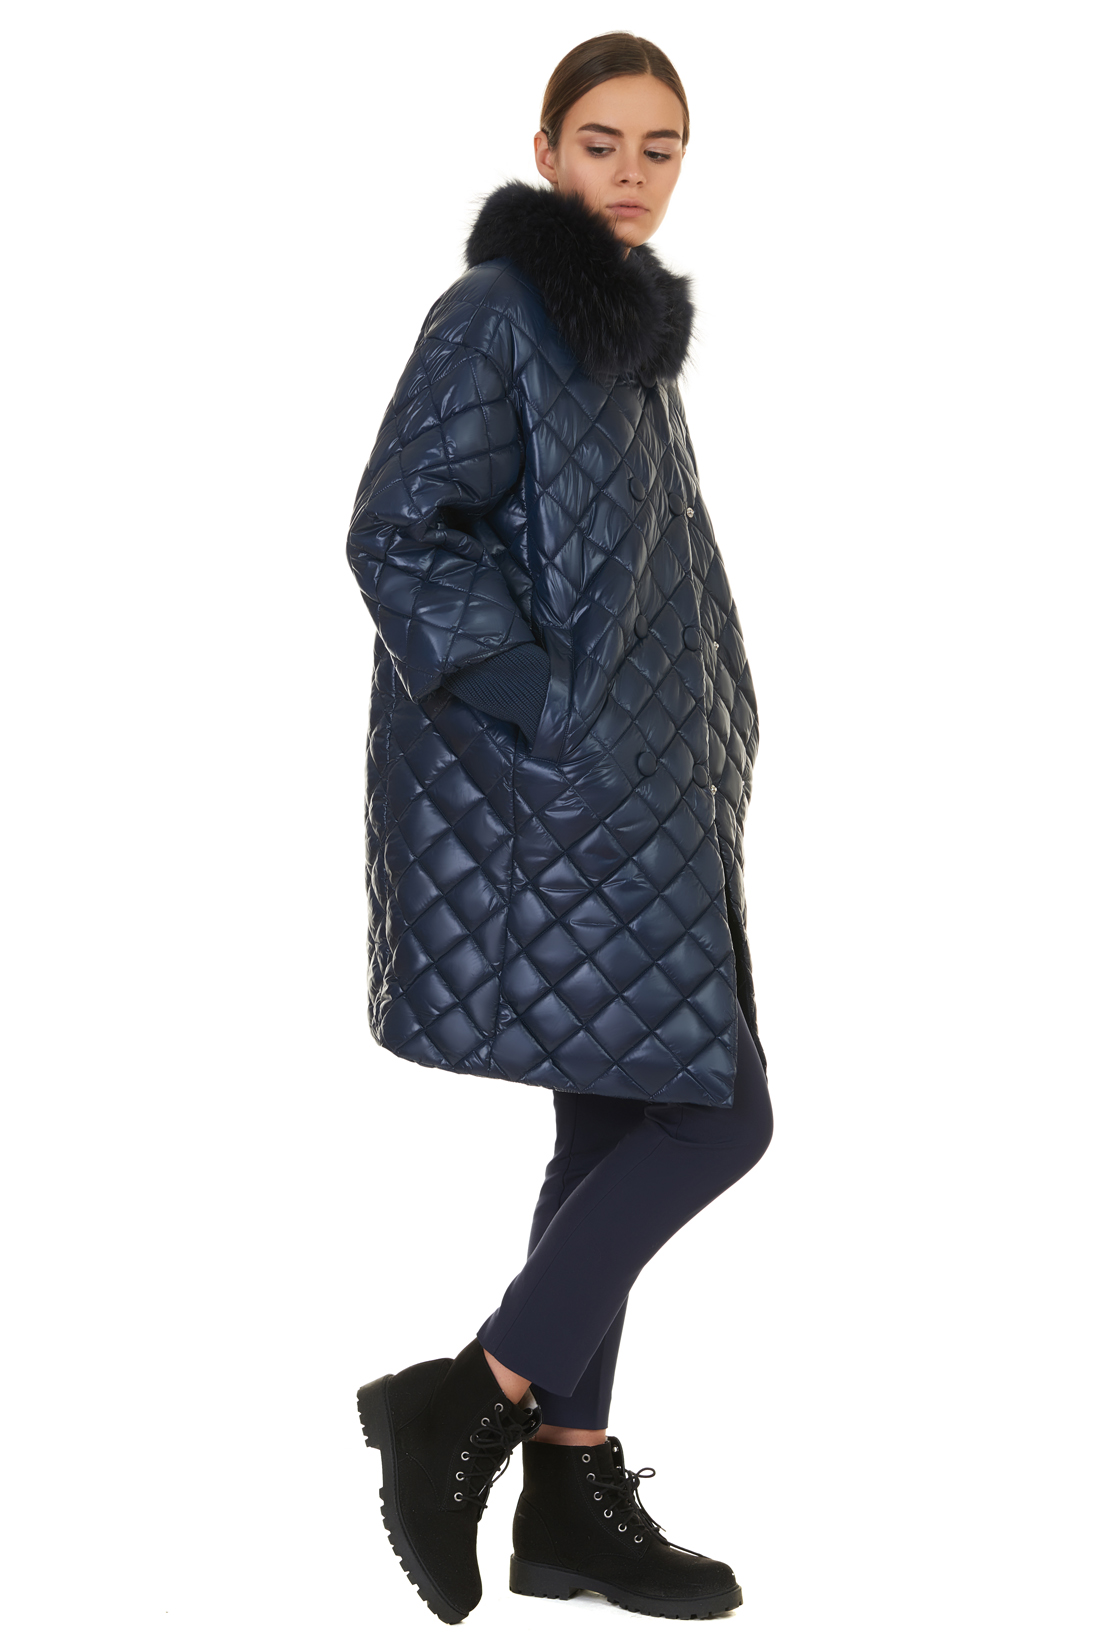 Куртка с меховым воротником и съёмными манжетами (арт. baon B037527), размер L, цвет синий Куртка с меховым воротником и съёмными манжетами (арт. baon B037527) - фото 5